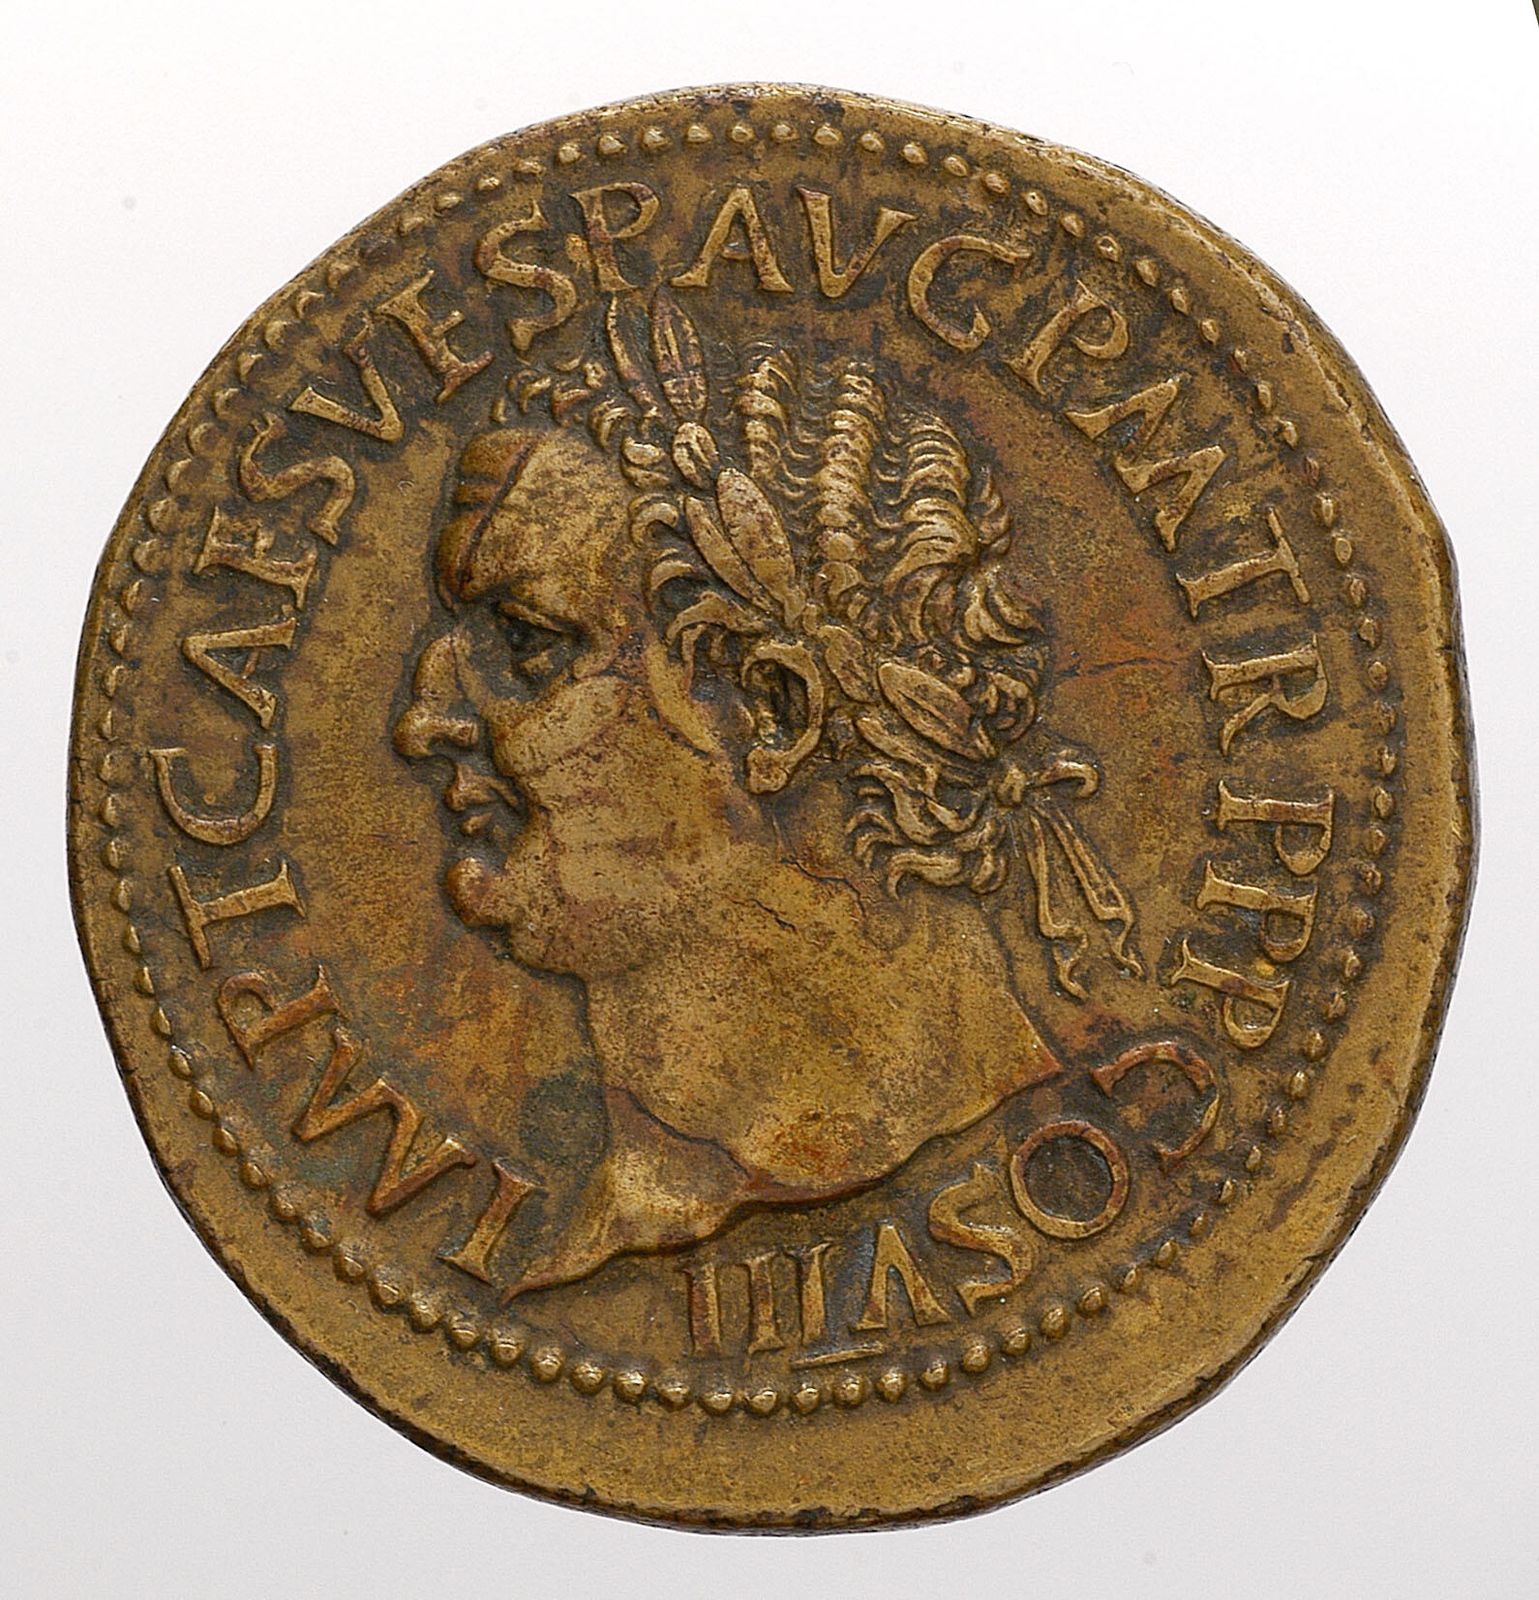 Paduaner-Medaille von Giovanni da Cavino auf Kaiser Titus